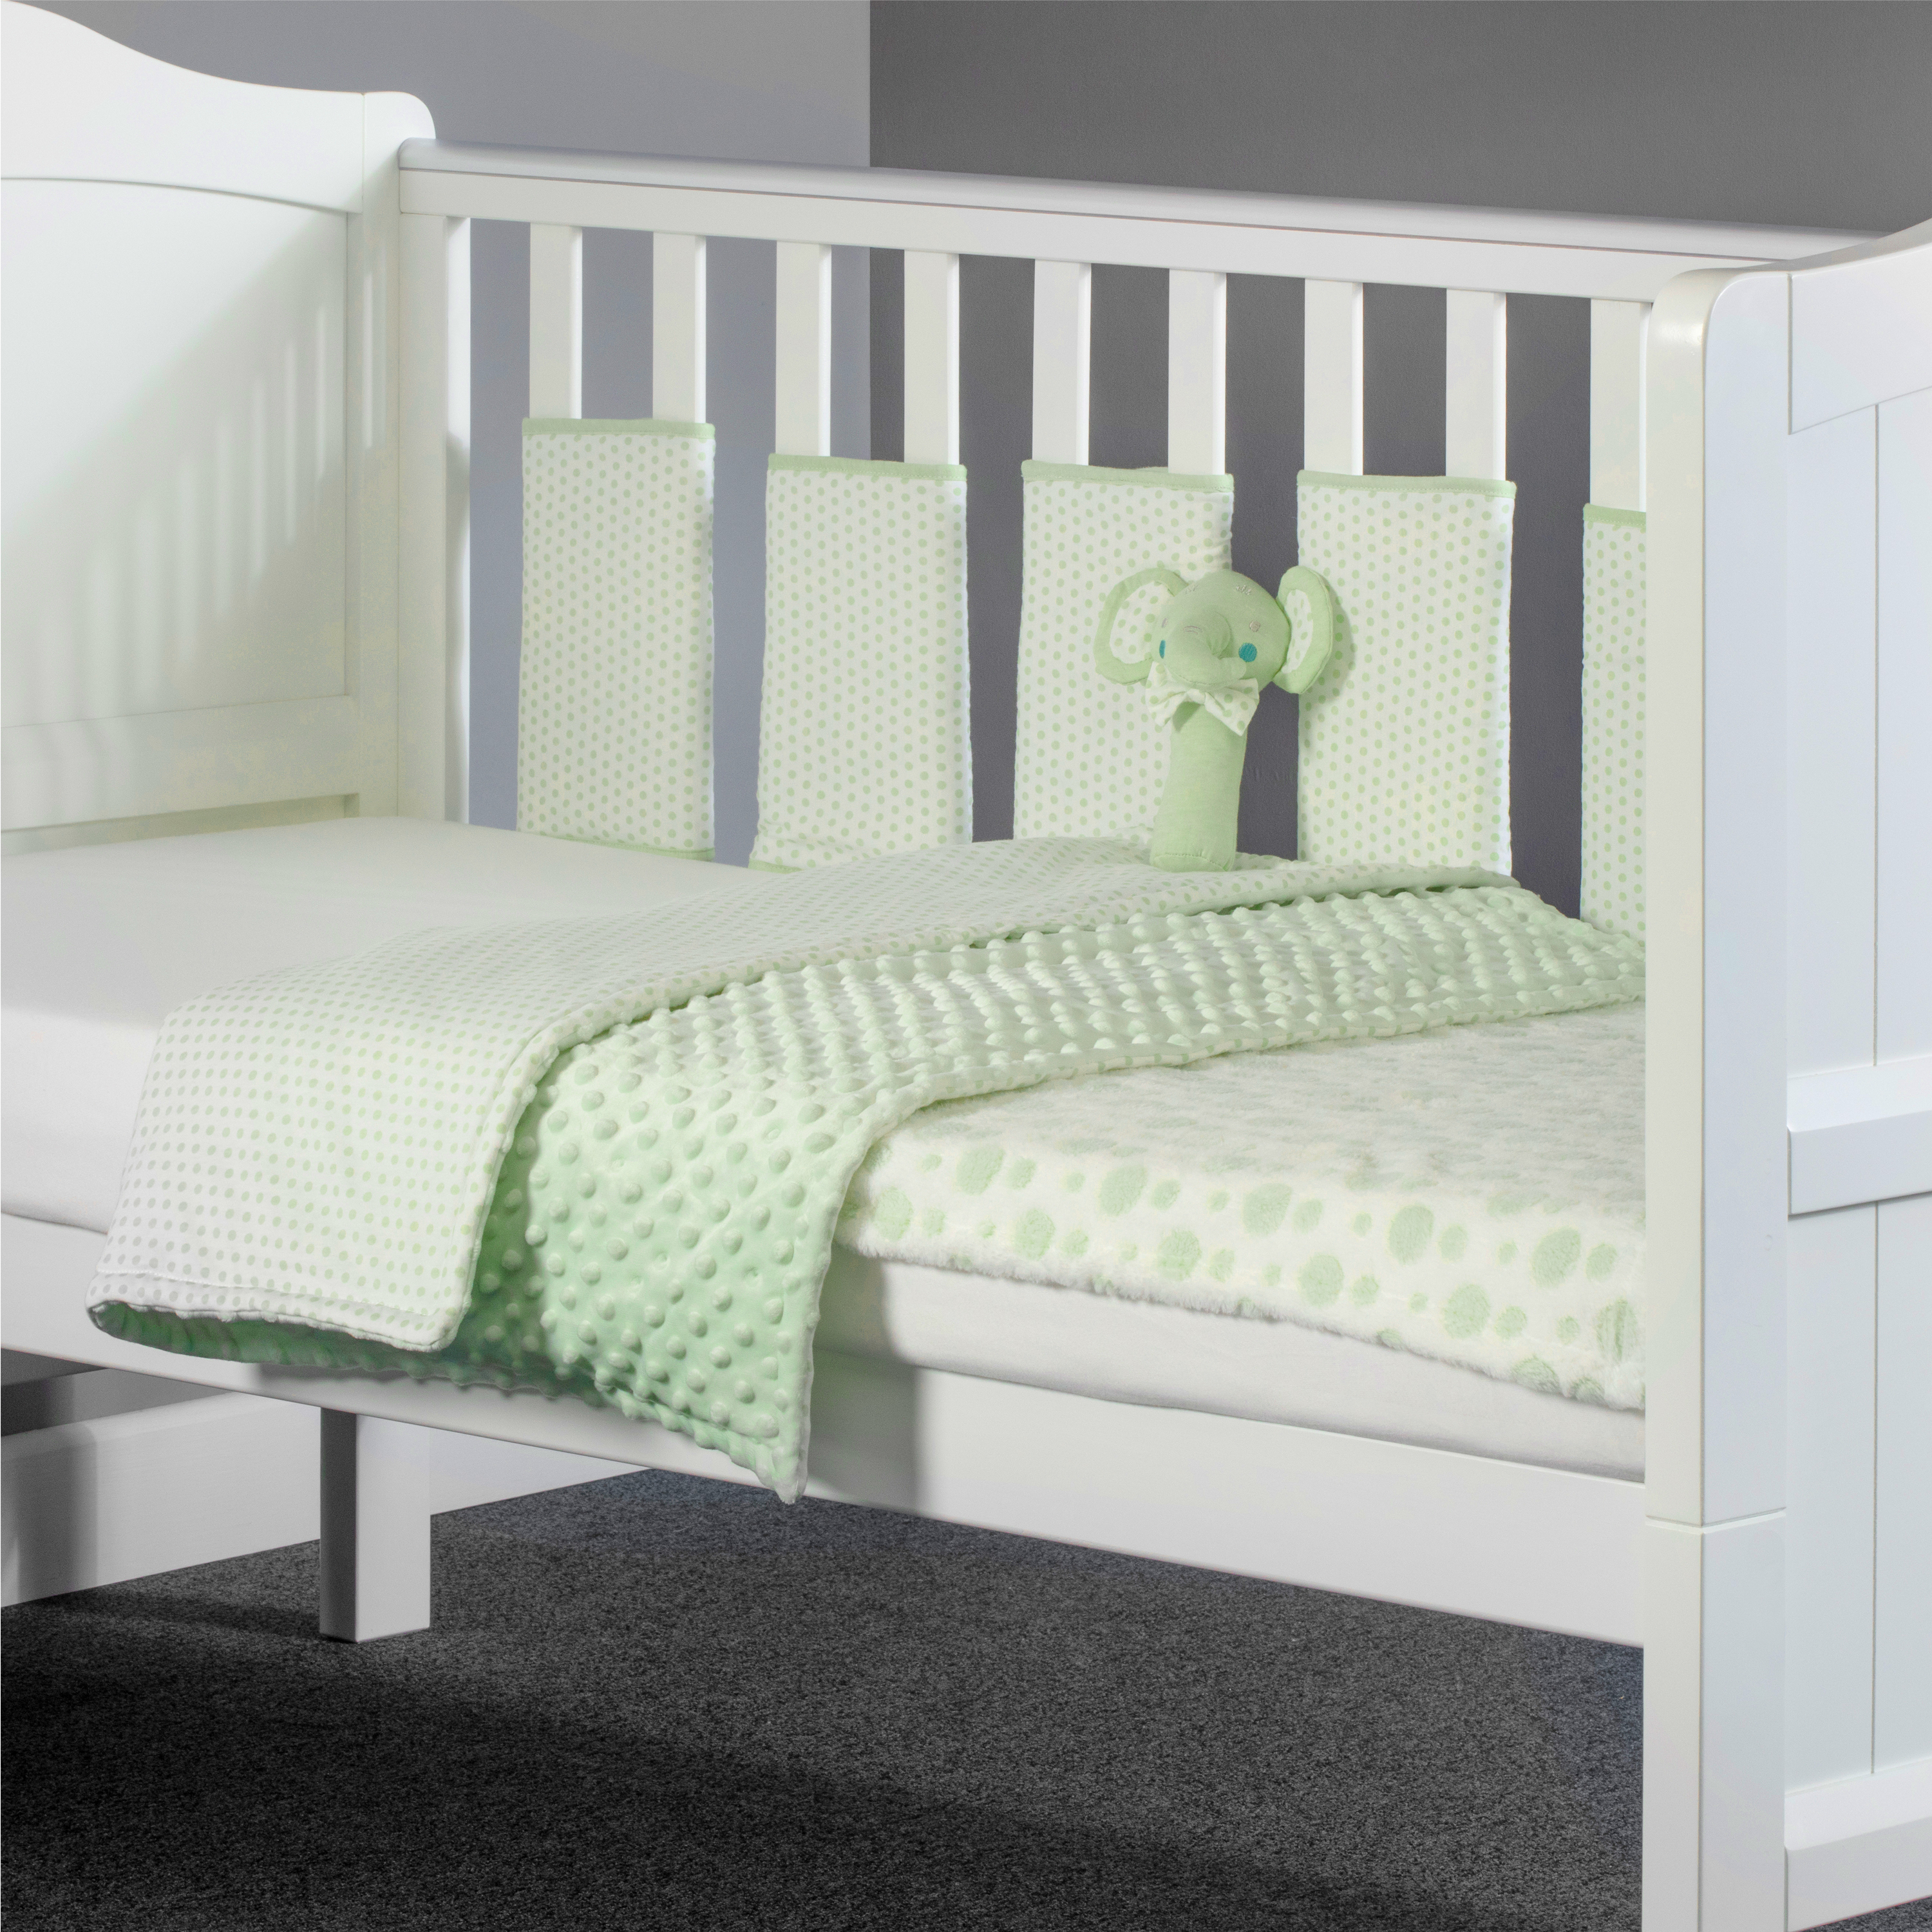 Mini Uno Little Ellie Elephant 5 Piece Cot / Cot Bed Quilt, Bumper, Blanket Bedding Set - Sage Spots